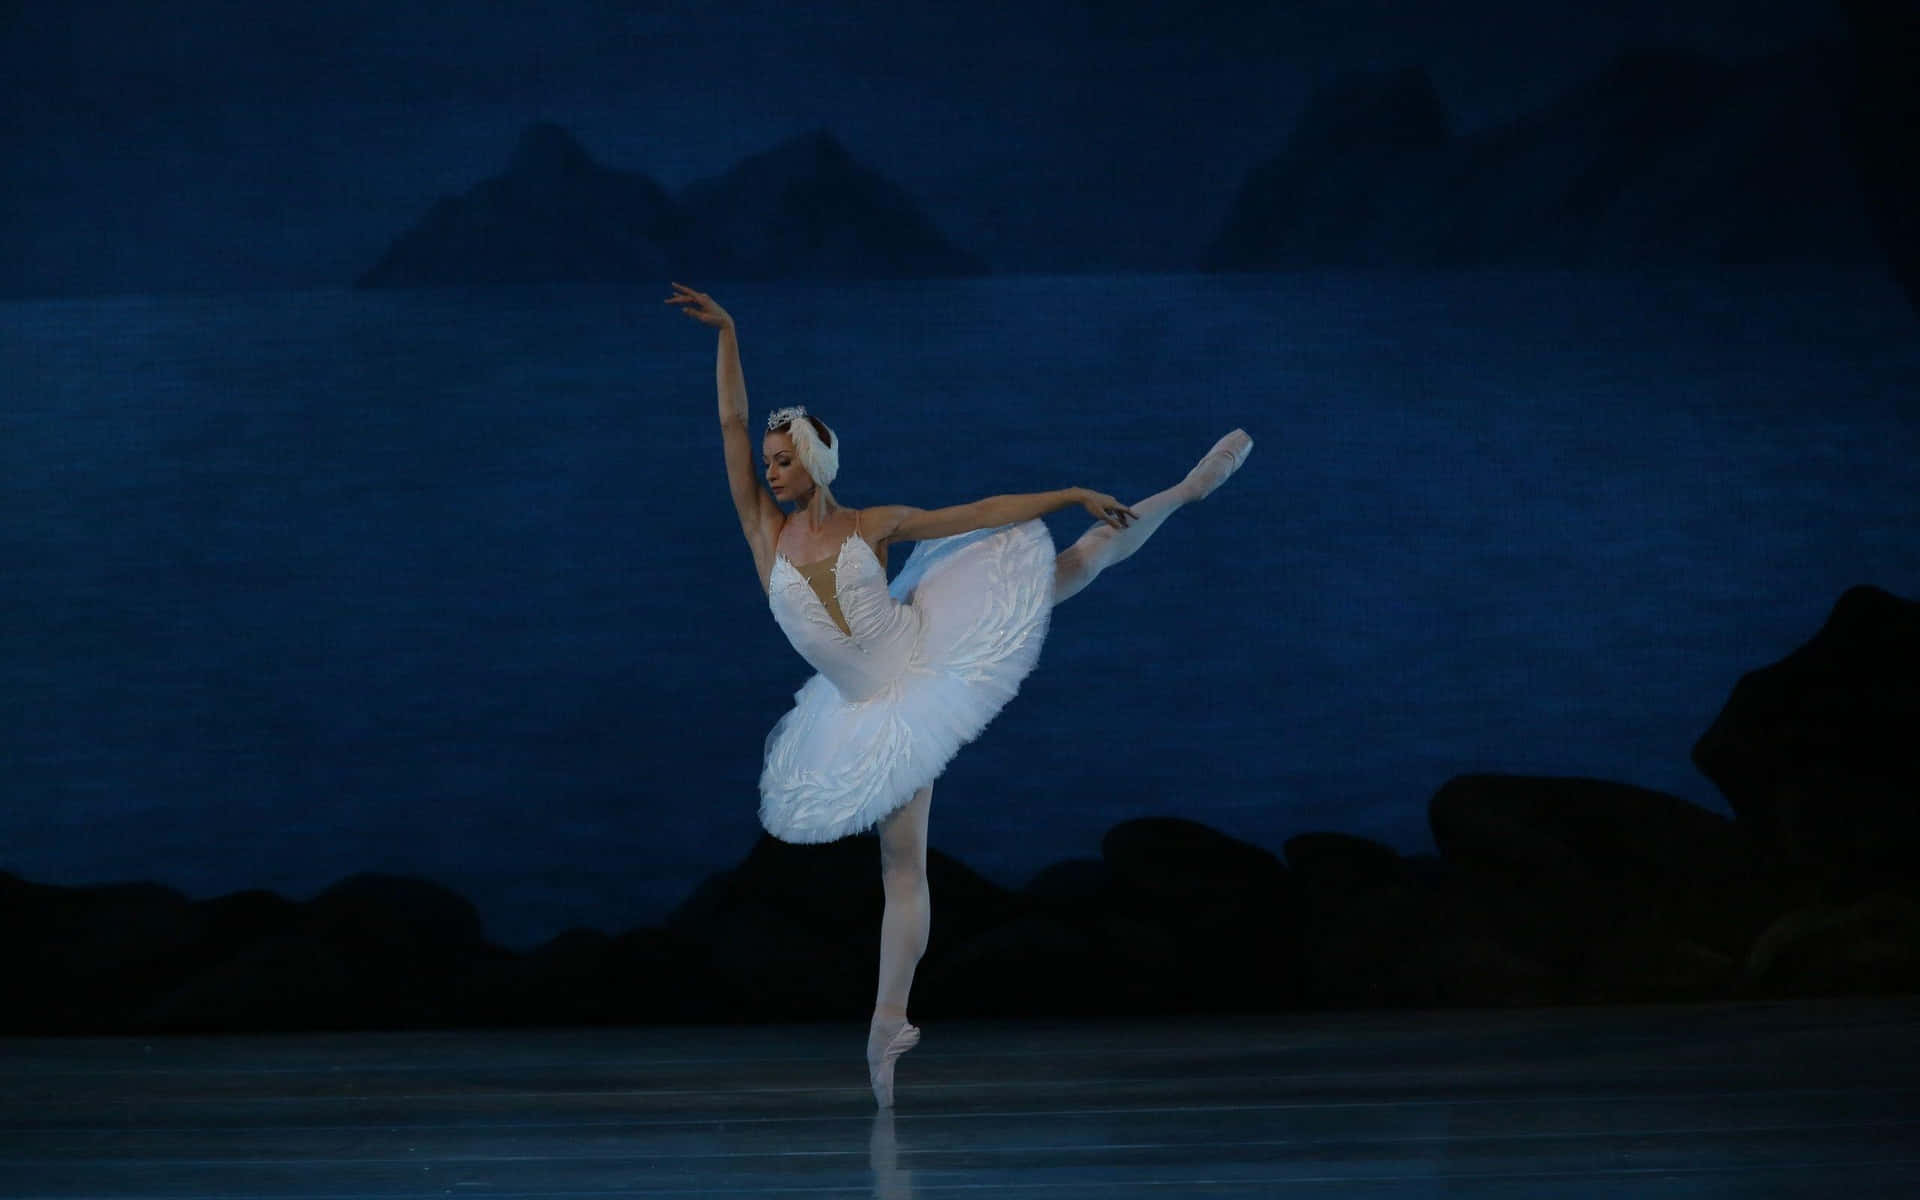 A dedicated ballet dancer practices her art